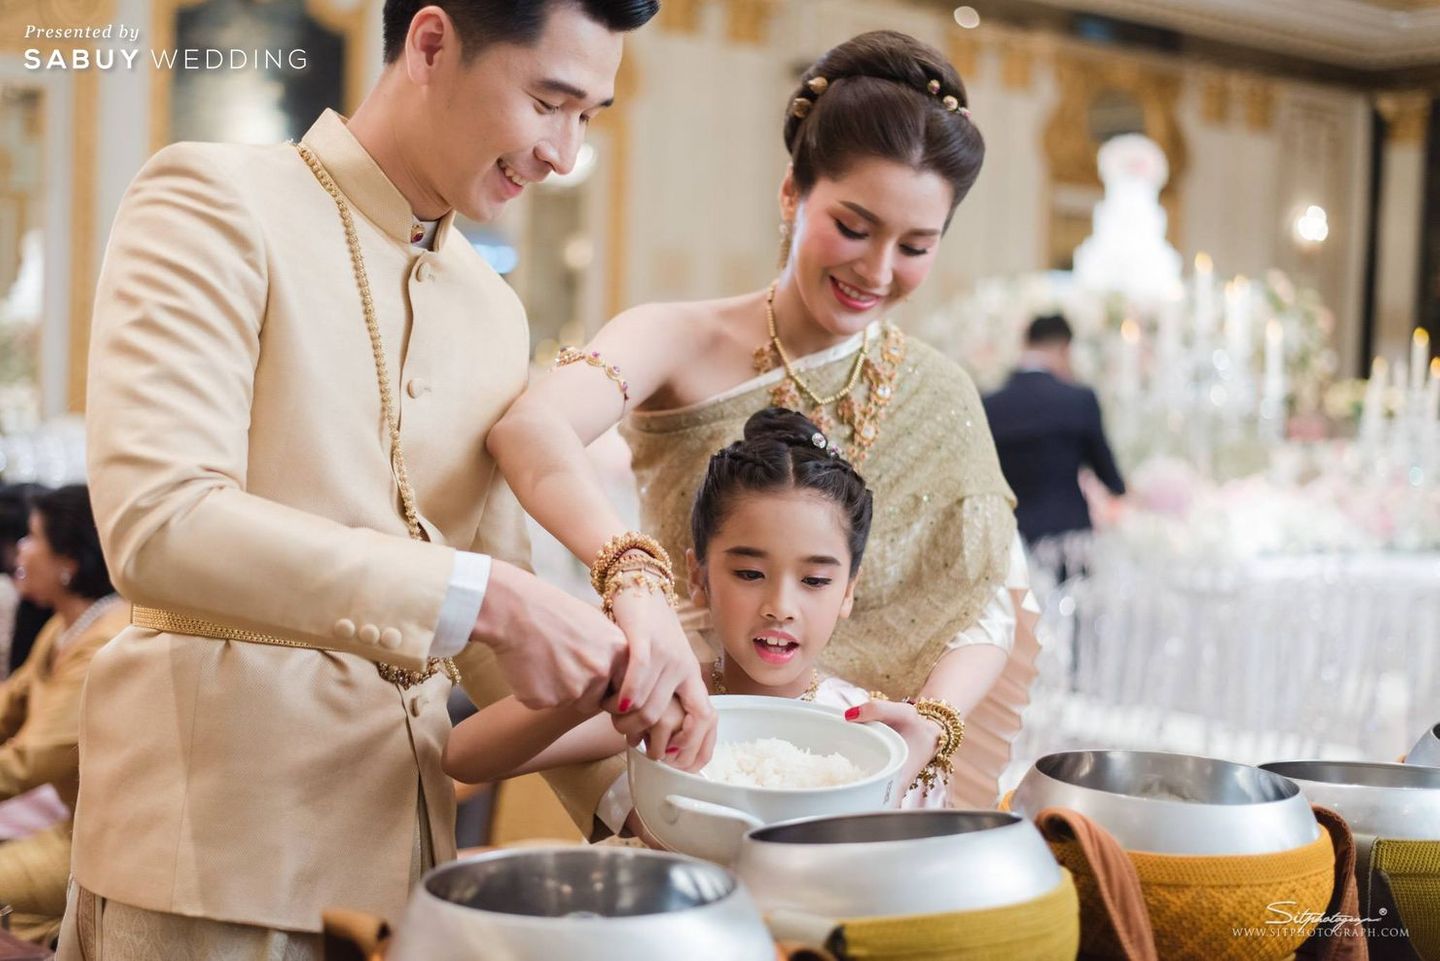 งานแต่งงาน,พิธีแต่งงานแบบไทย,ชุดไทยเจ้าสาว,เจ้าสาวเจ้าบ่าว,สถานที่แต่งงาน,โรงแรม รีวิวงานแต่งสุดอบอุ่นแห่งปี ‘We are Family’ งานนี้ห้อมล้อมด้วยรัก @Mandarin Oriental